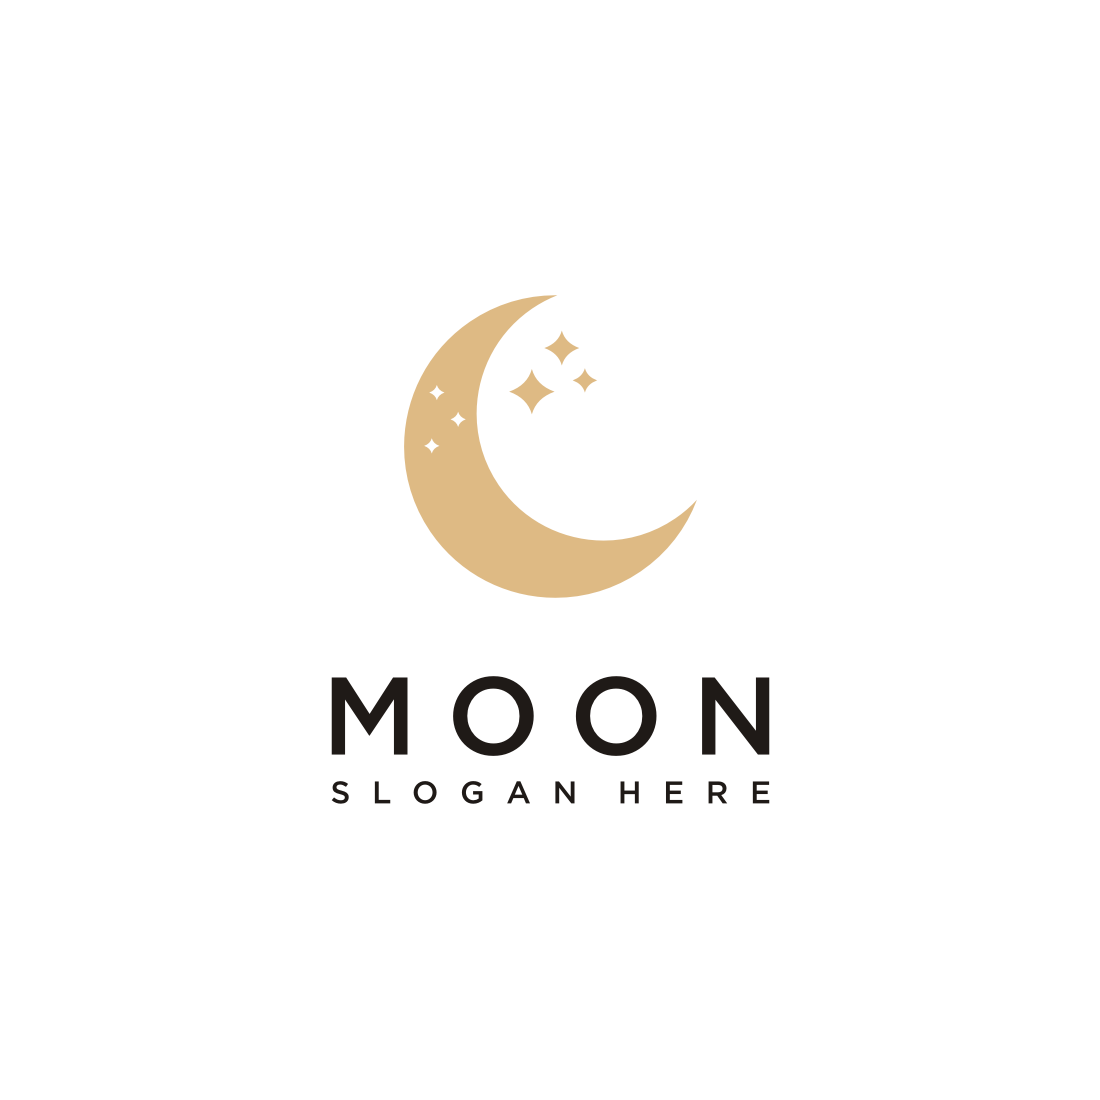 Moon Knight Logo PNG | Disney+ Variant by Bats66 on DeviantArt